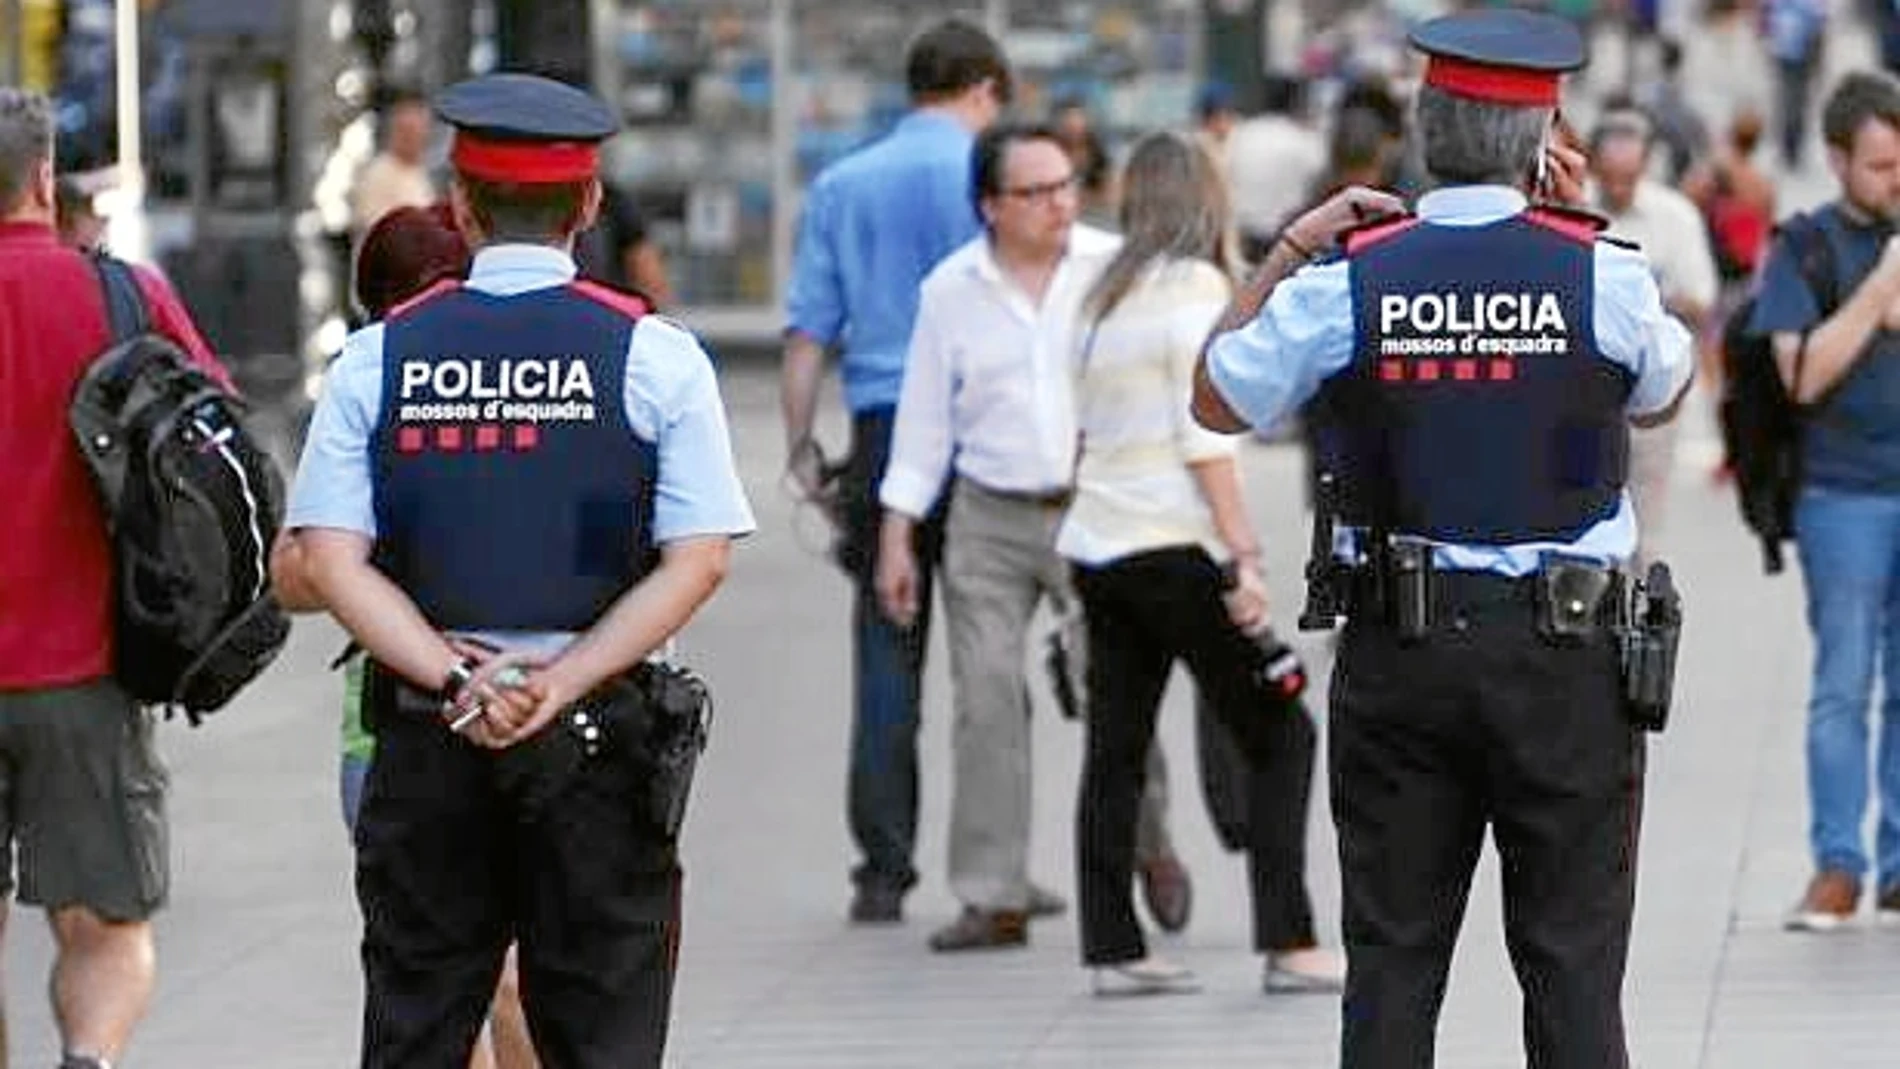 El Ayuntamiento y también la oposición quieren destacar el papel de las fuerzas de seguridad durante los atentados en Cataluña